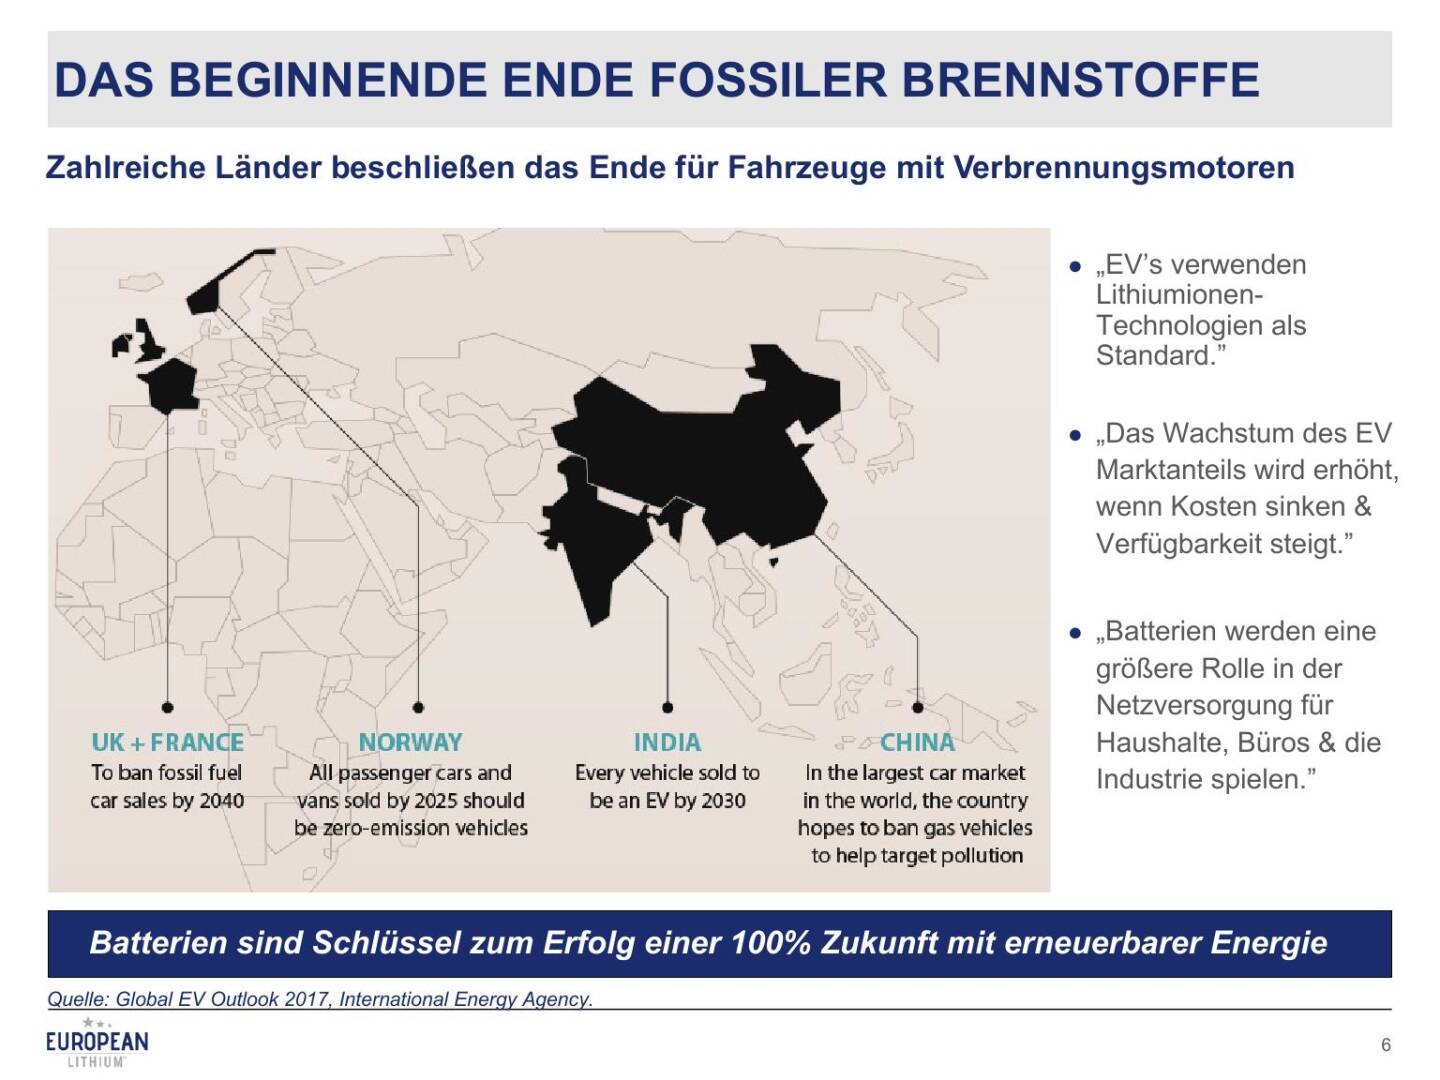 Präsentation European Lithium - Ende fossiler Brennstoffe